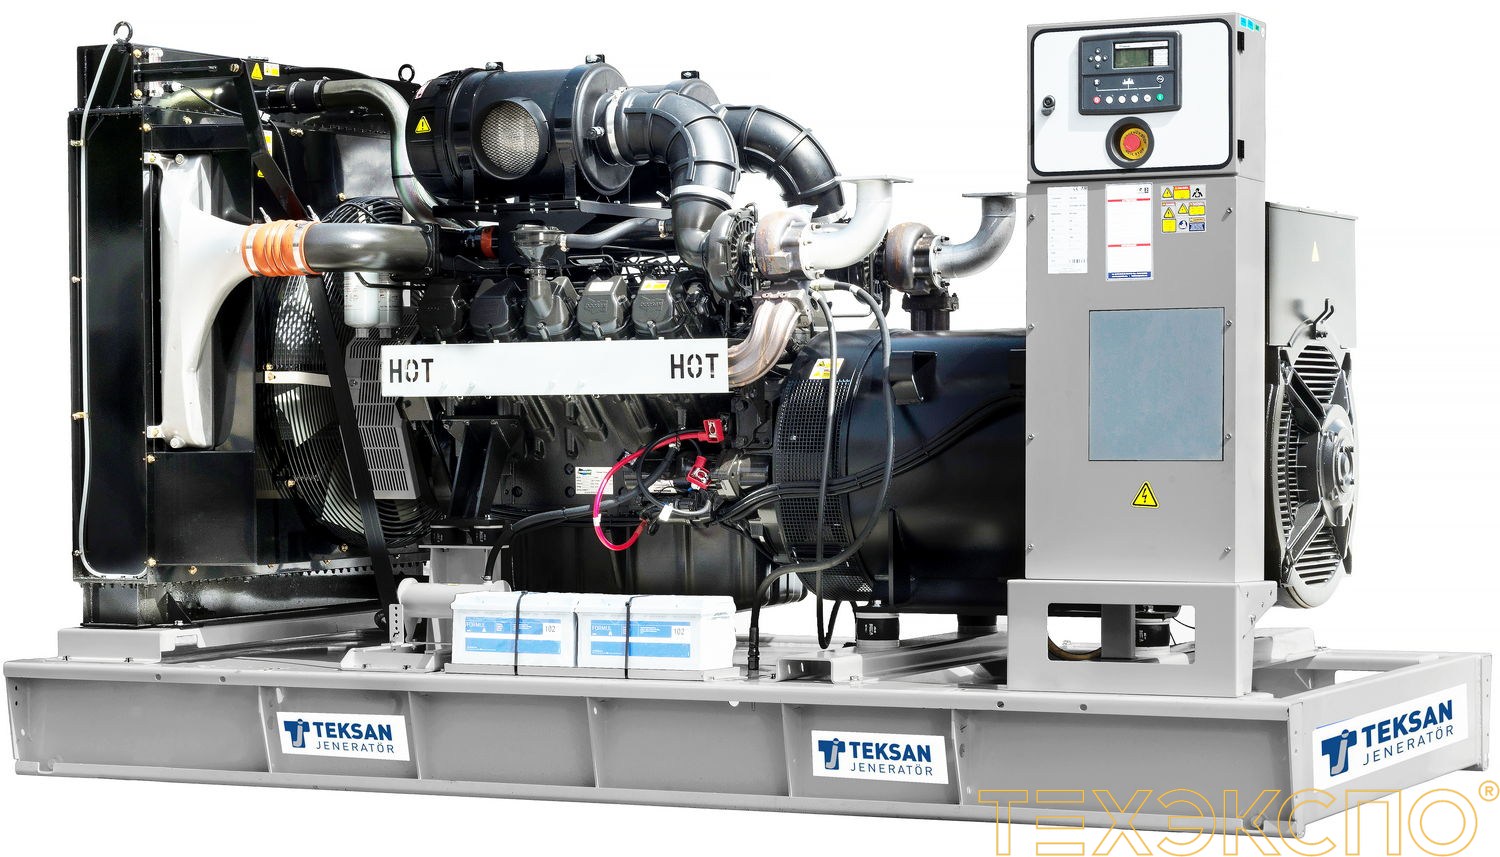 Teksan TJ625DW5A - ДЭС 456 кВт в Санкт-Петербурге | Дизельная электростанция в Техэкспо